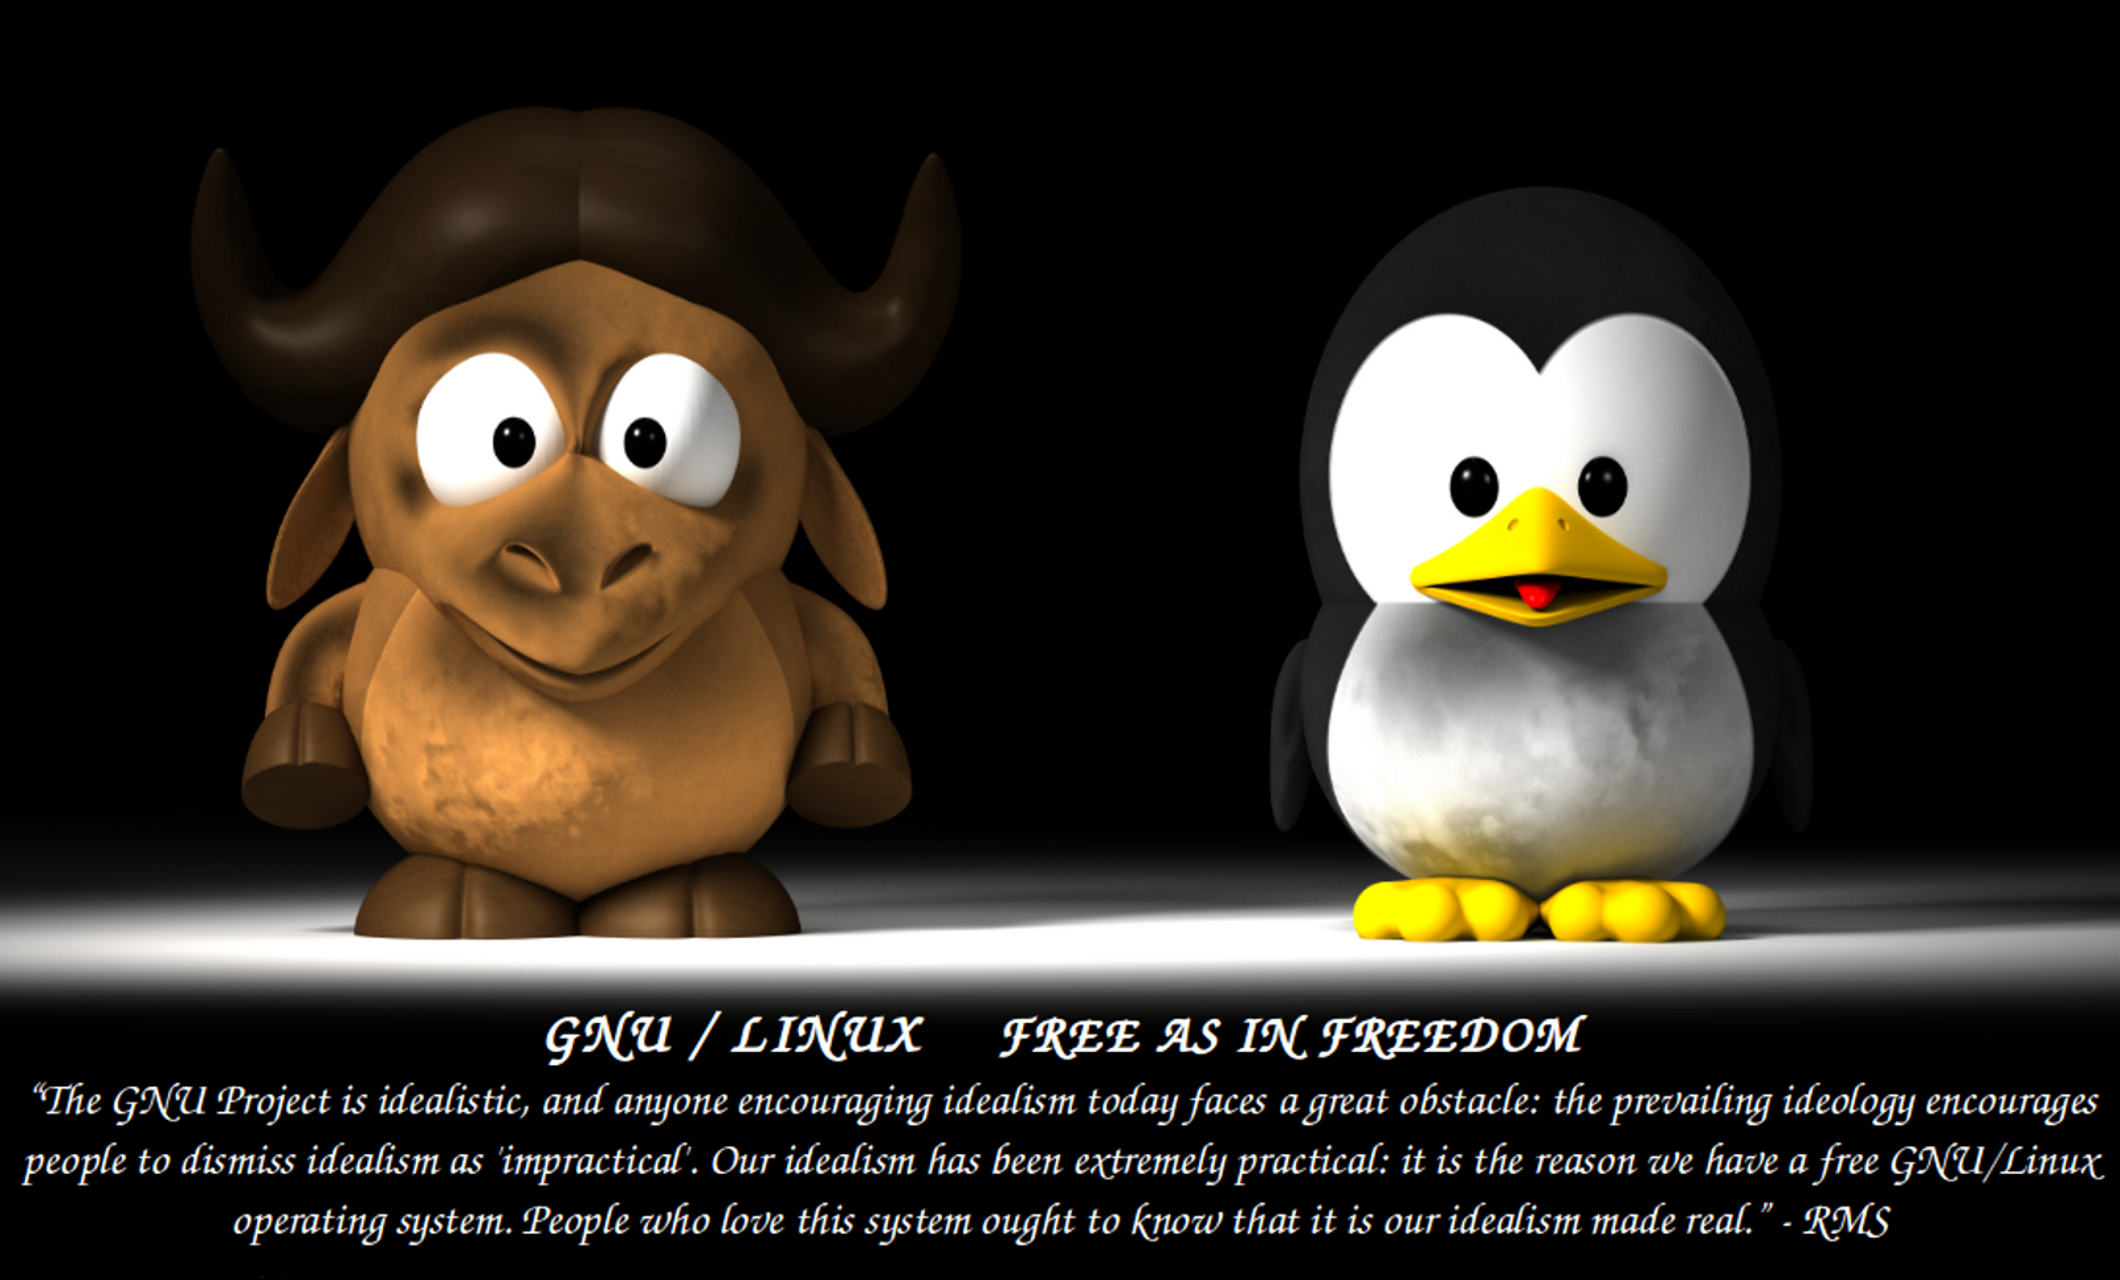 gnu/linux phrase rms